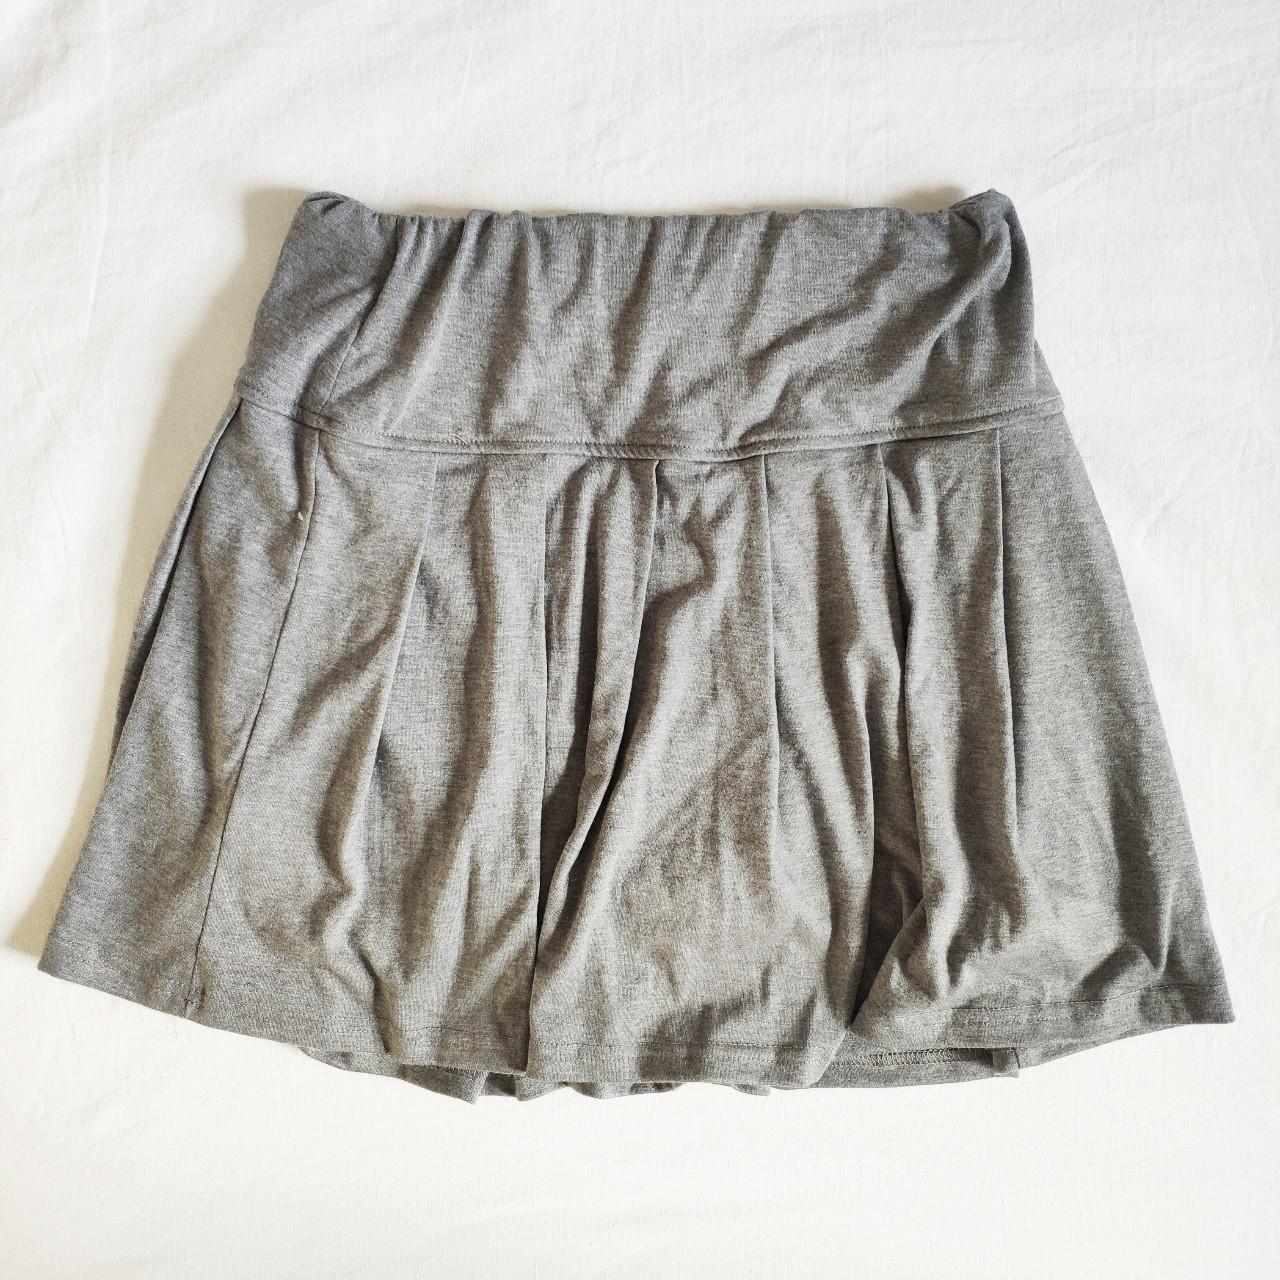 grey tennis skirt 🌿 super soft tennis skirt w thick... - Depop